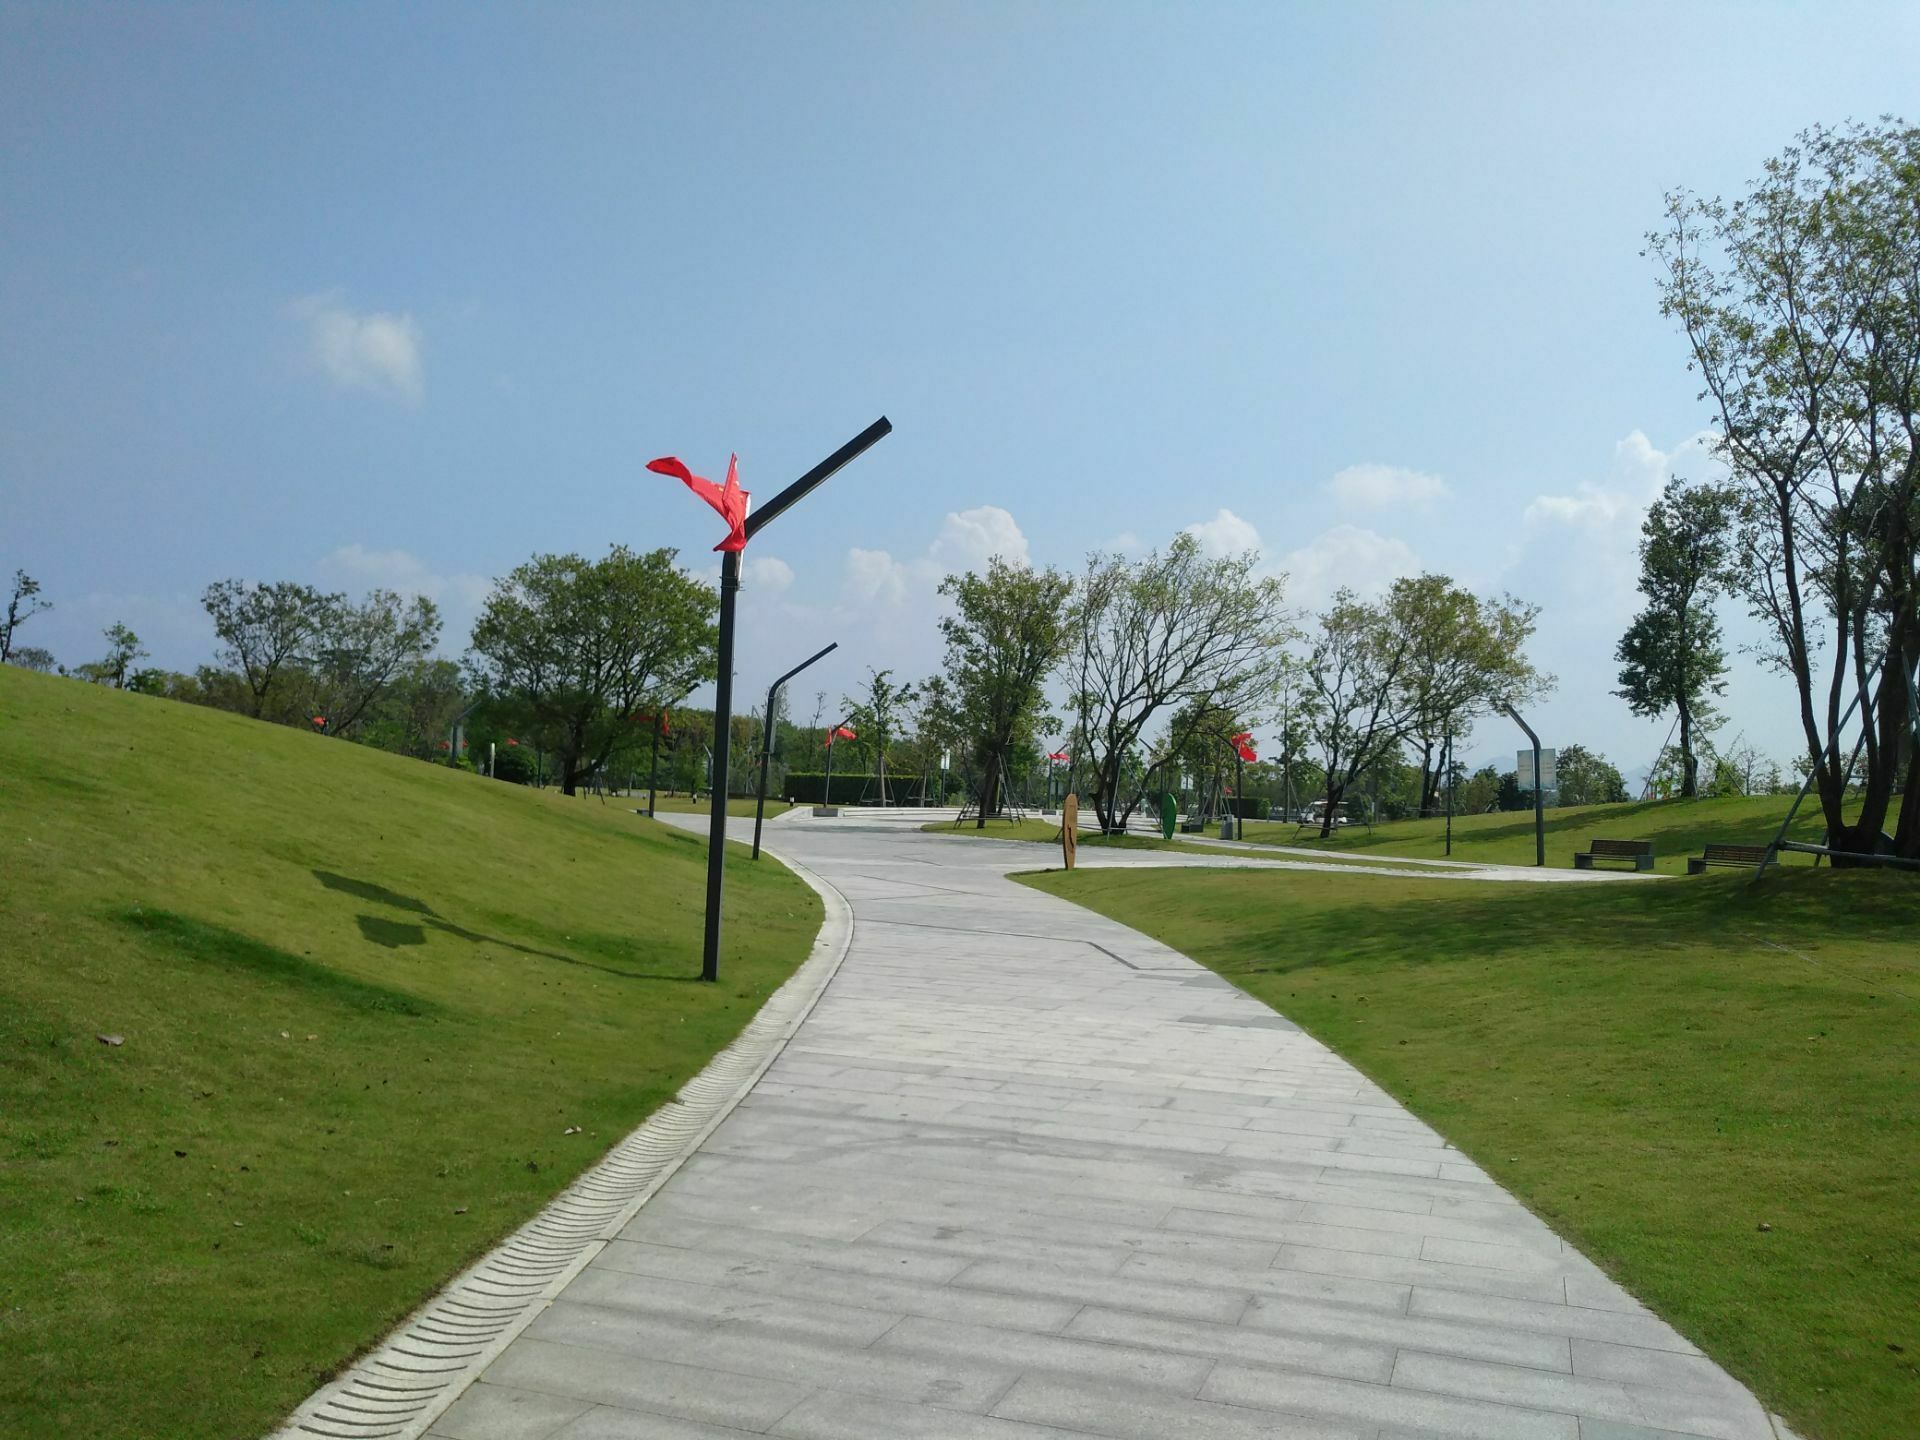 深圳湾公园-追风轮滑公园